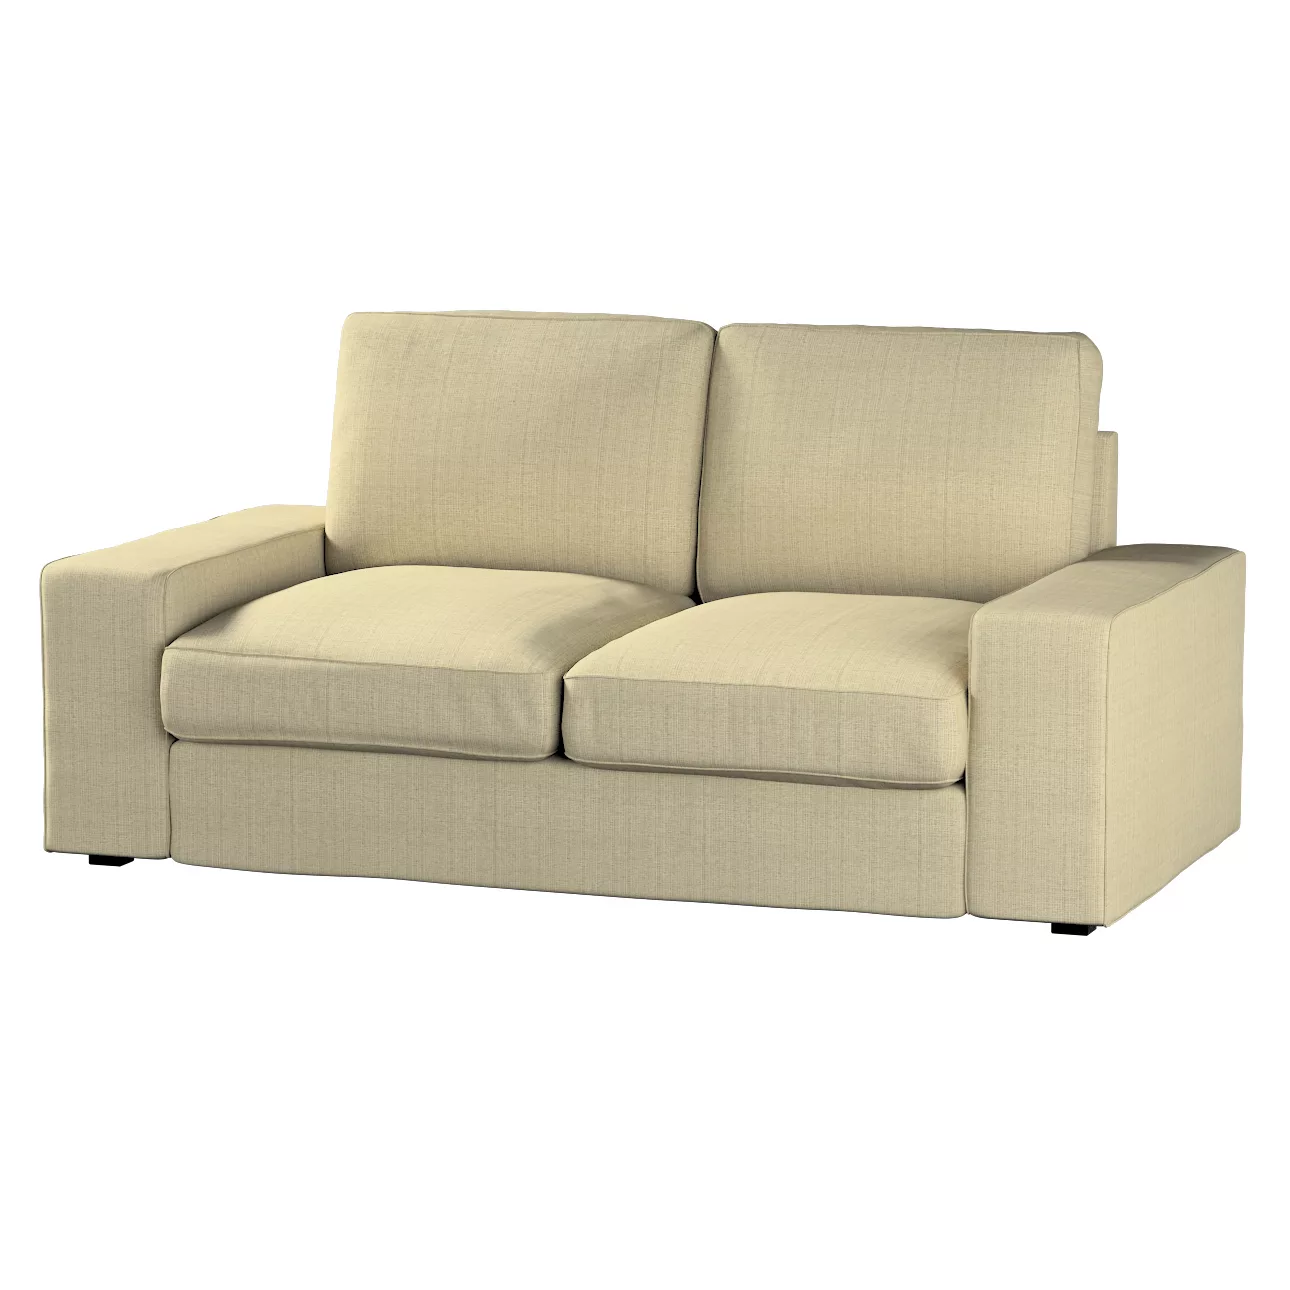 Bezug für Kivik 2-Sitzer Sofa, beige-creme, Bezug für Sofa Kivik 2-Sitzer, günstig online kaufen